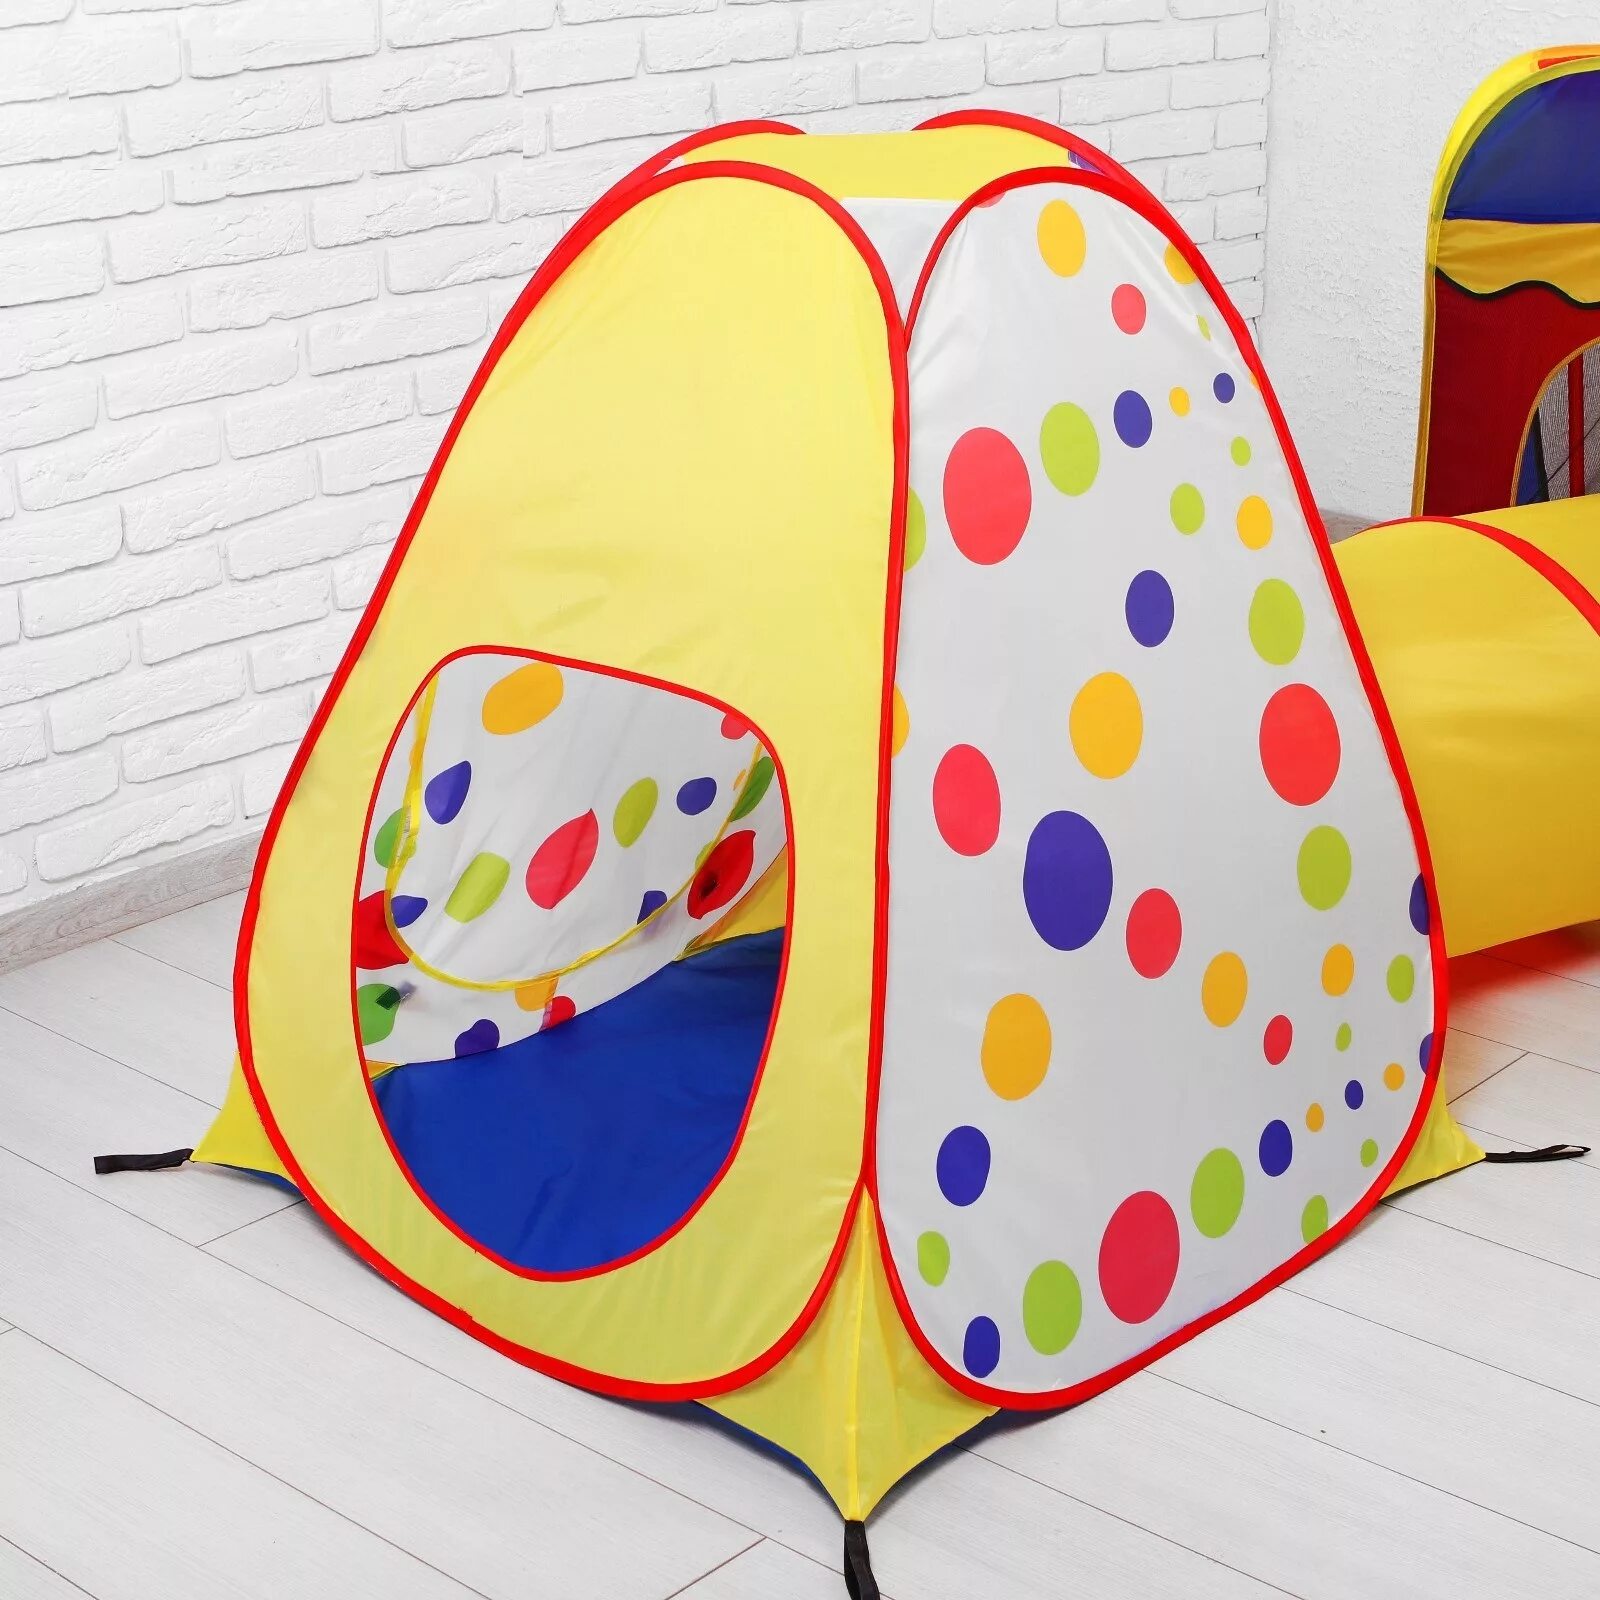 Купить палатку домик. Палатка для малышей. Игровая палатка для детей. Домик палатка для детей. Детские палатки домики.